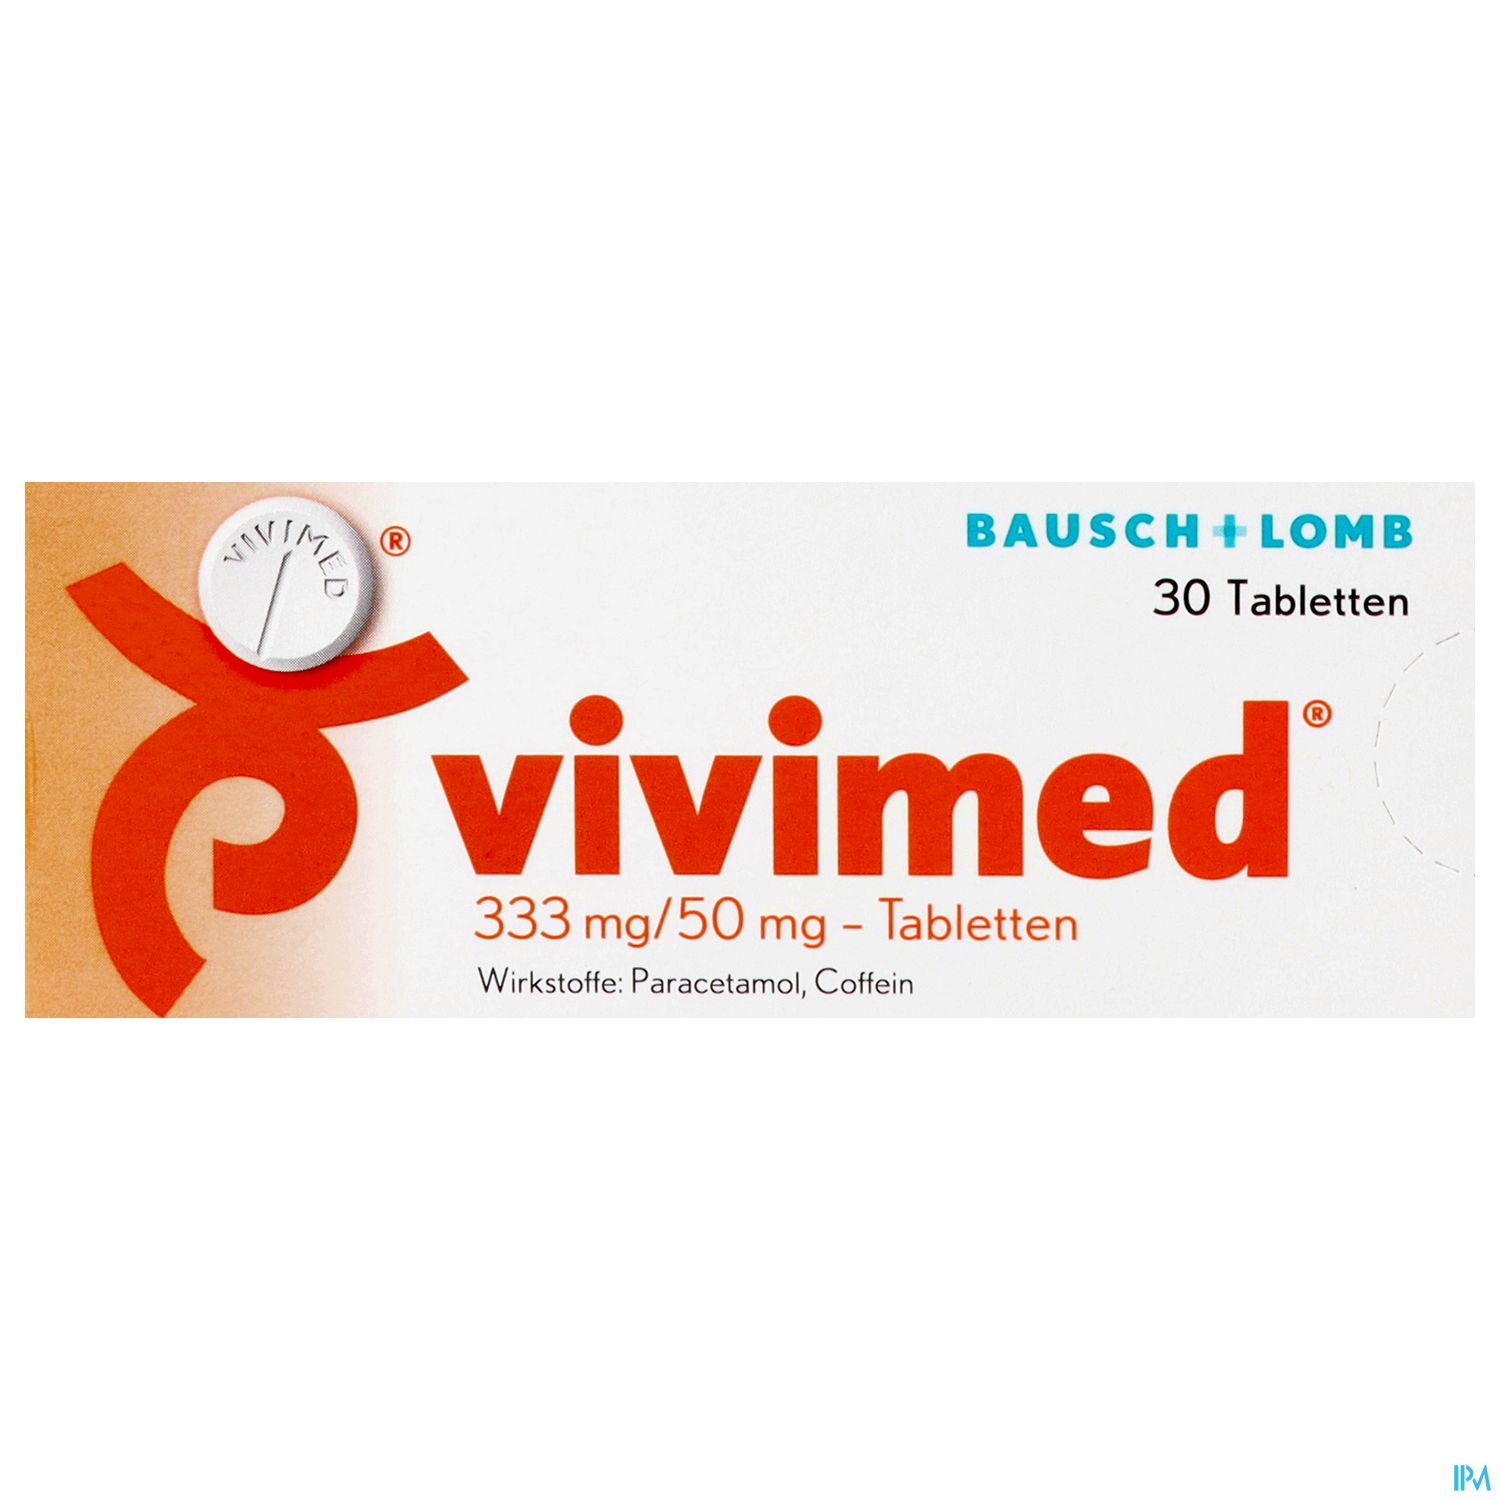 Vivimed 333 mg/50 mg - Tabletten